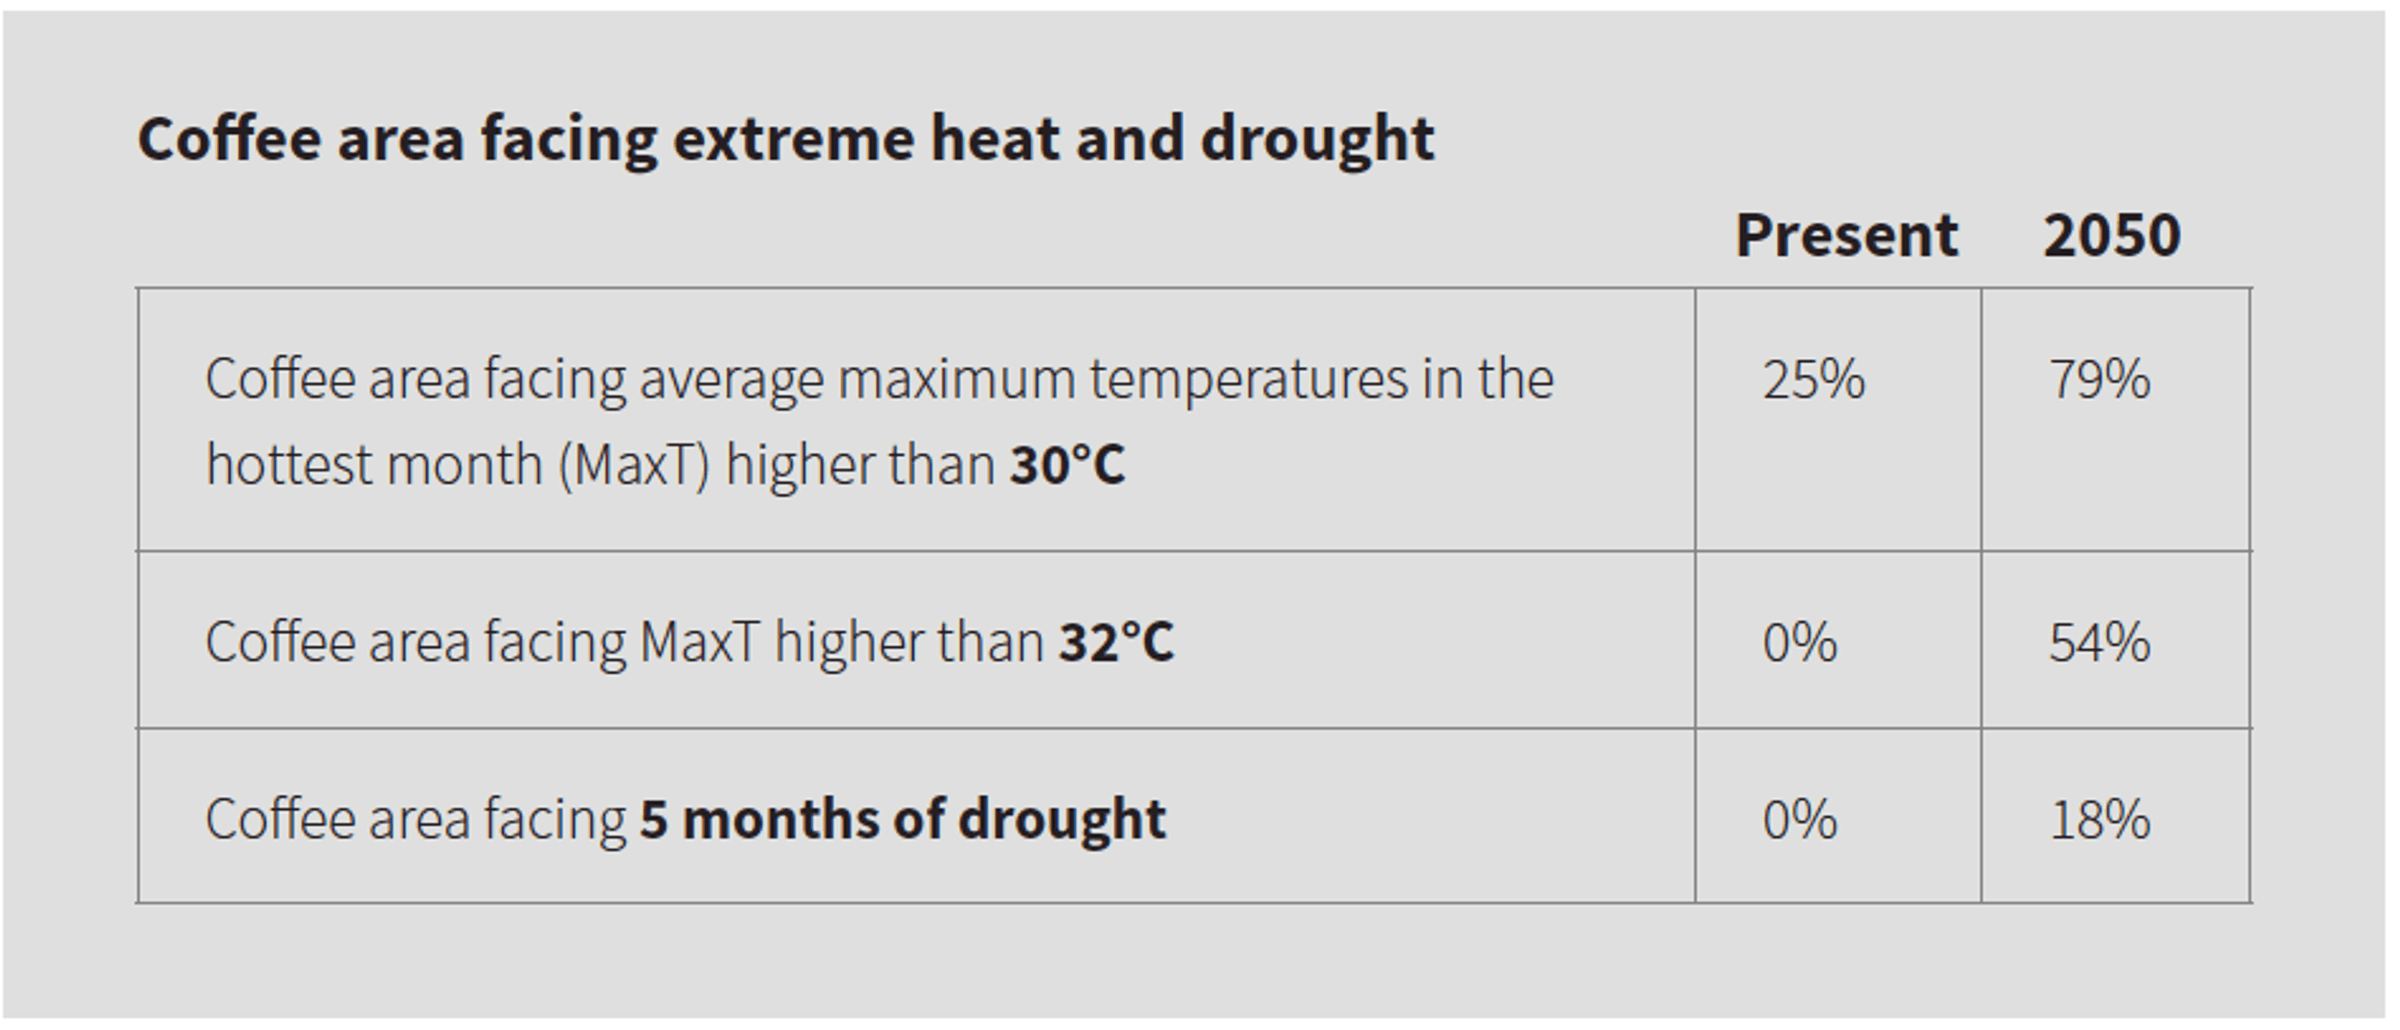 Heat and drought 2050 original